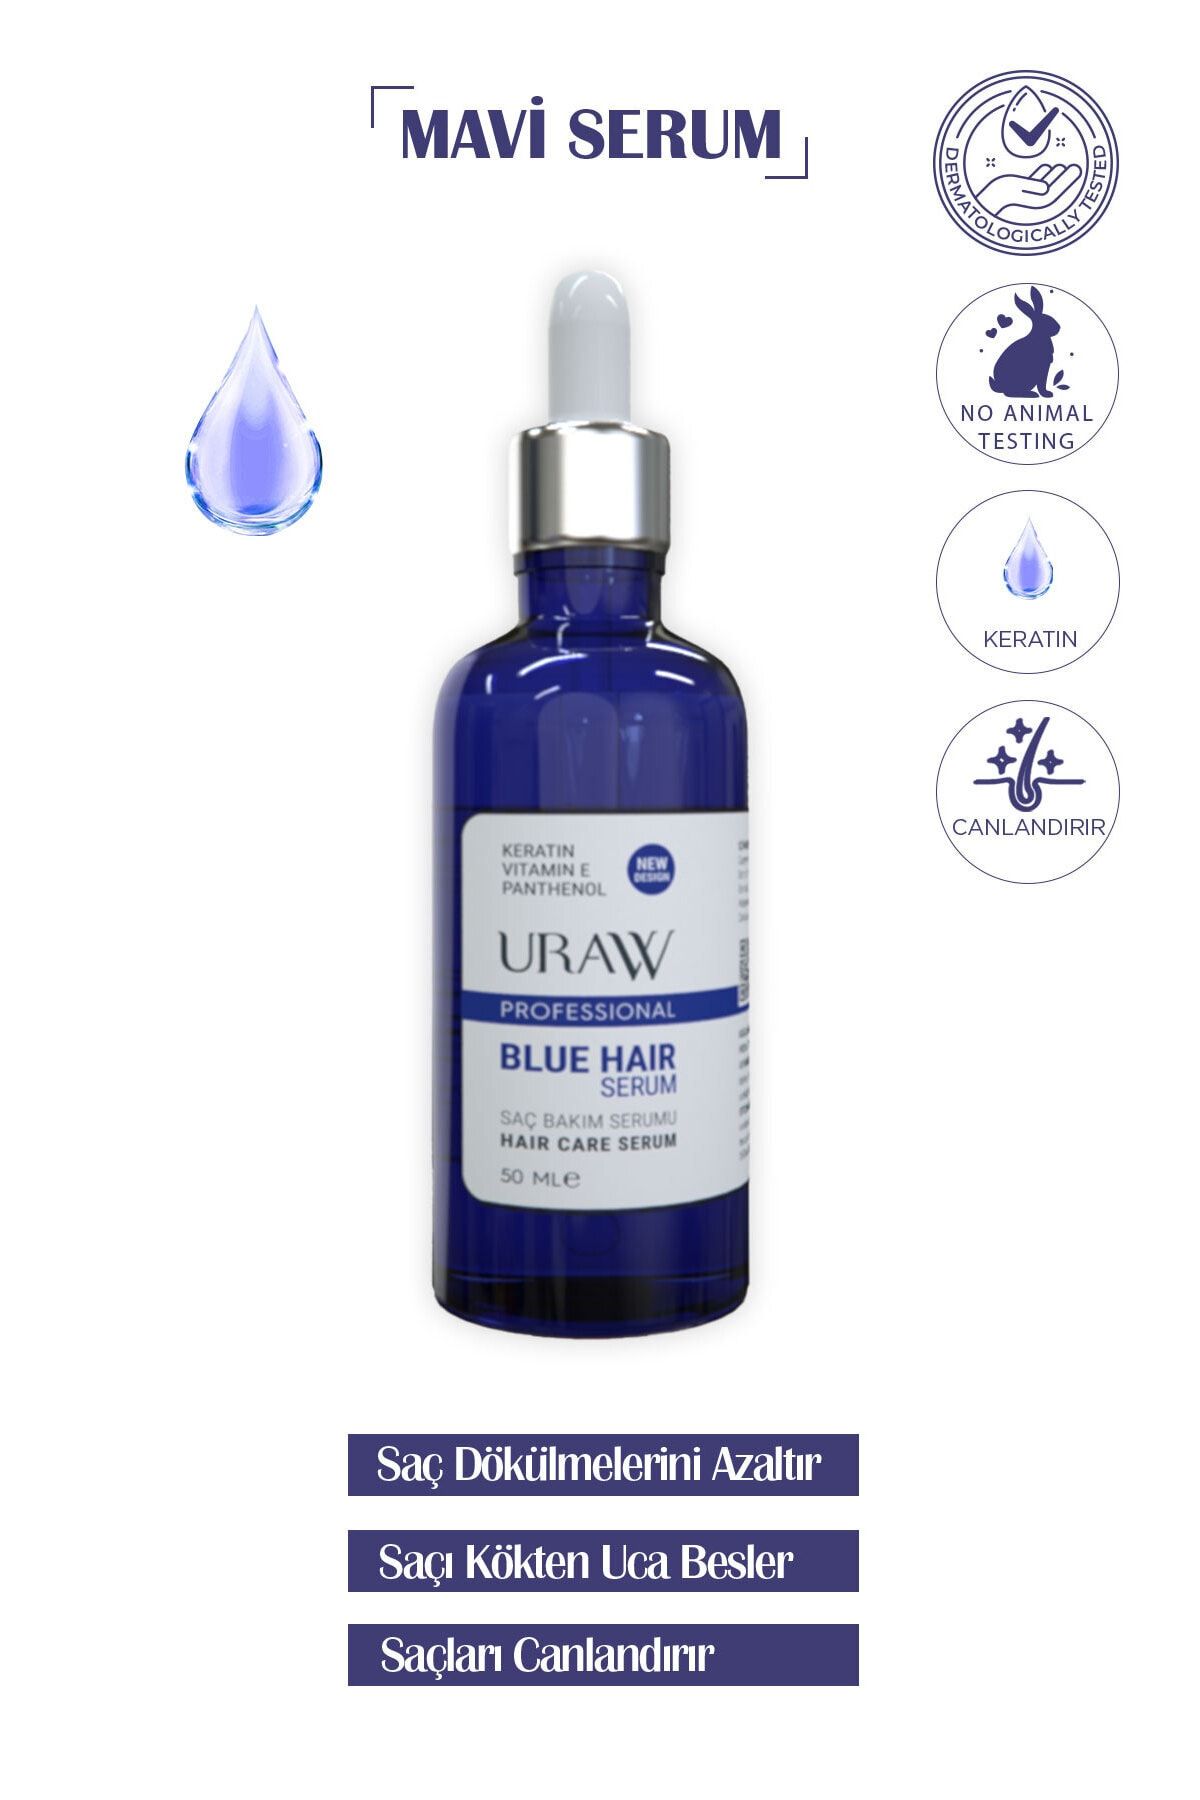 Uraw Dökülme Önleyici Güçlendirici ve Onarıcı Blue Hair Mavi Serum 50 ml